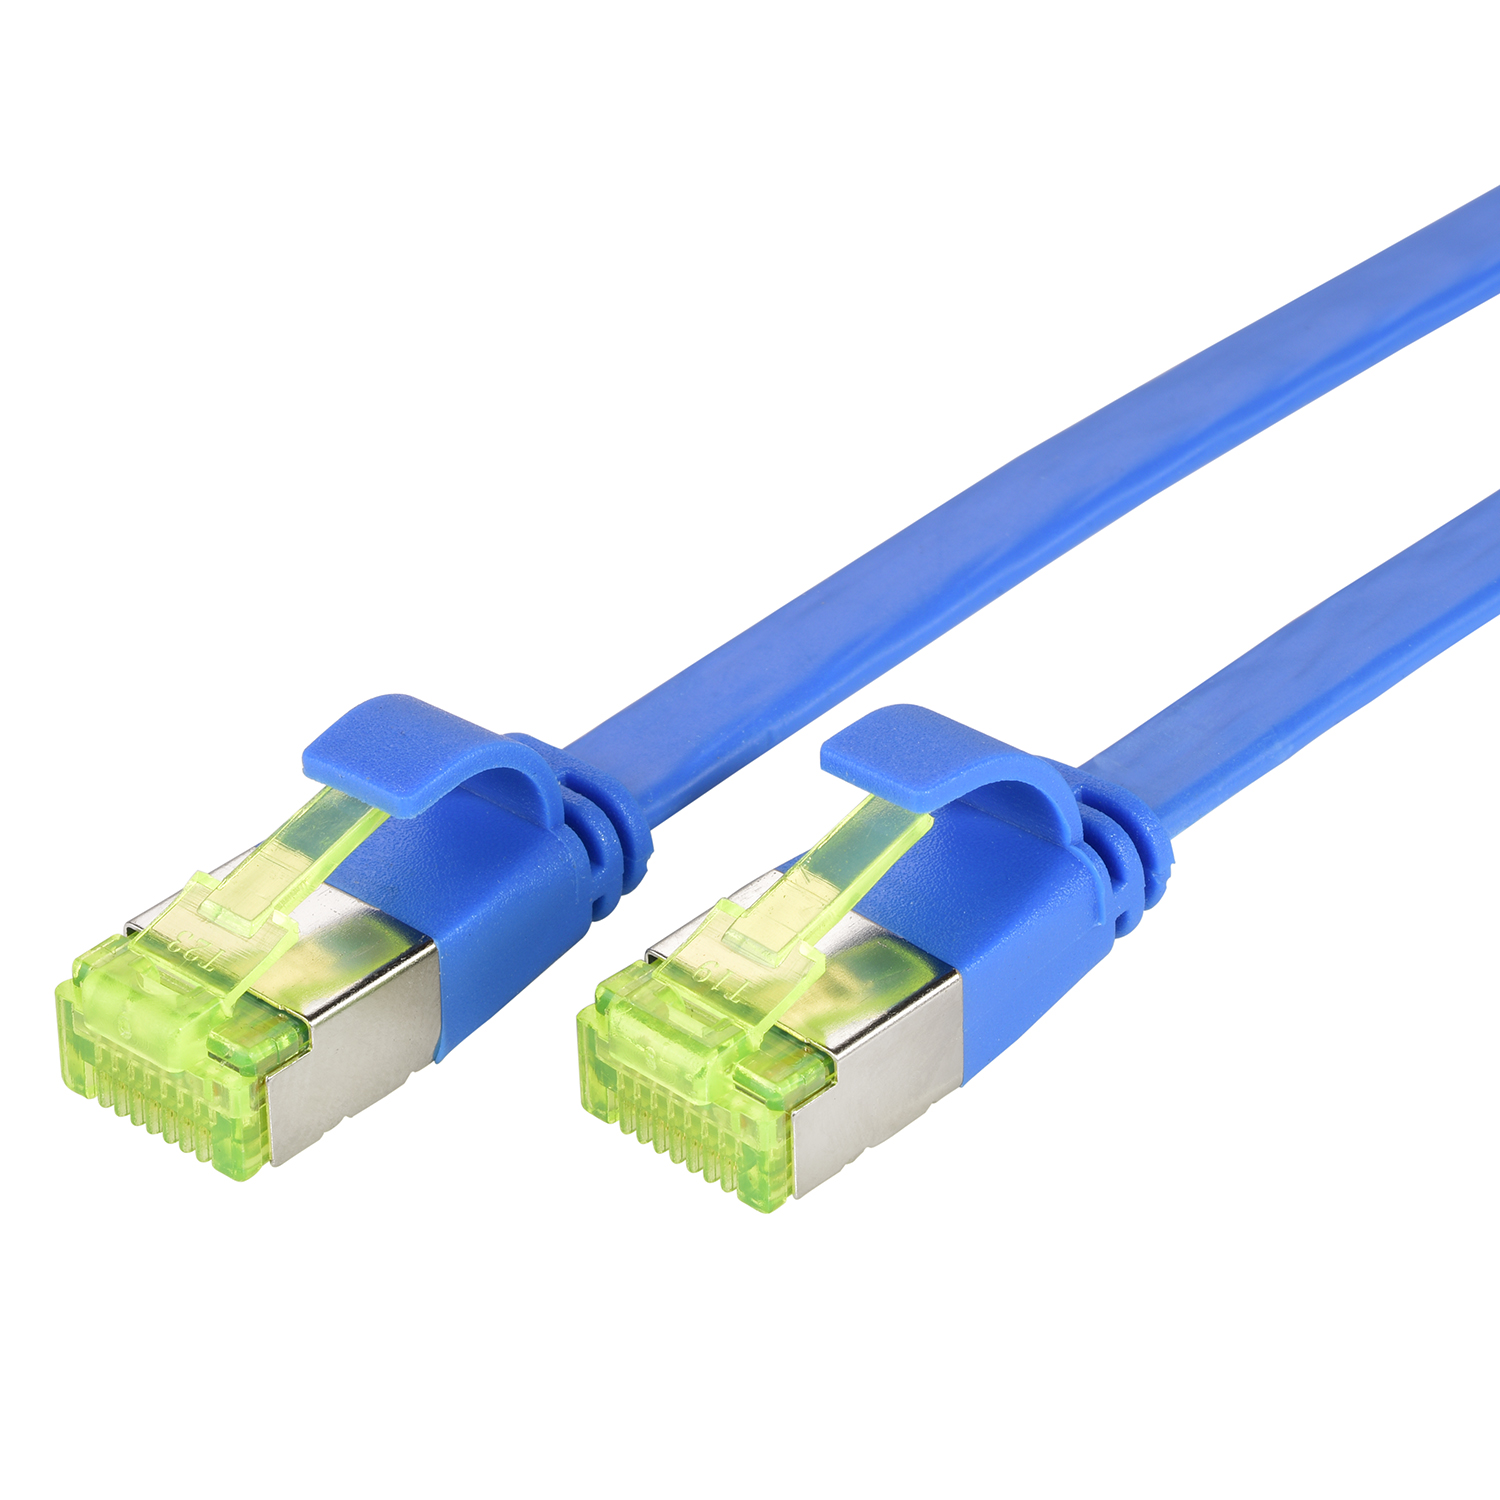 / 10 TPFNET m GBit, 10er Netzwerkkabel, Flachkabel U/FTP Patchkabel Pack blau, 0,50m 0,5